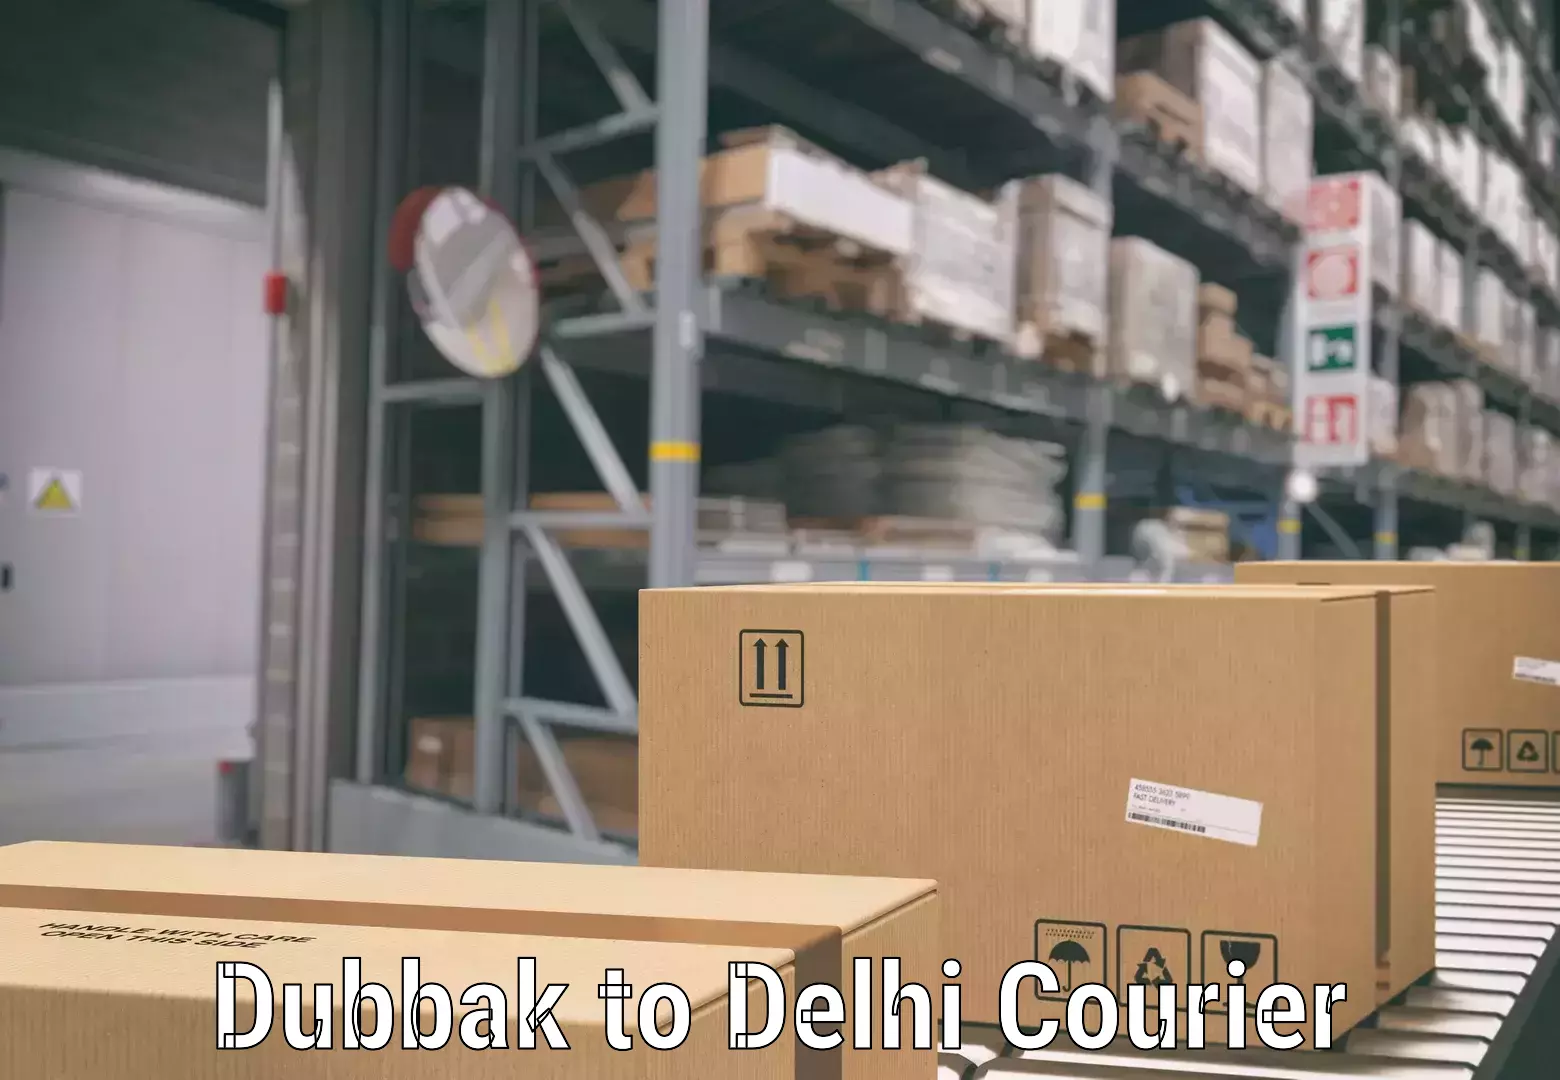 Luggage delivery app Dubbak to Delhi